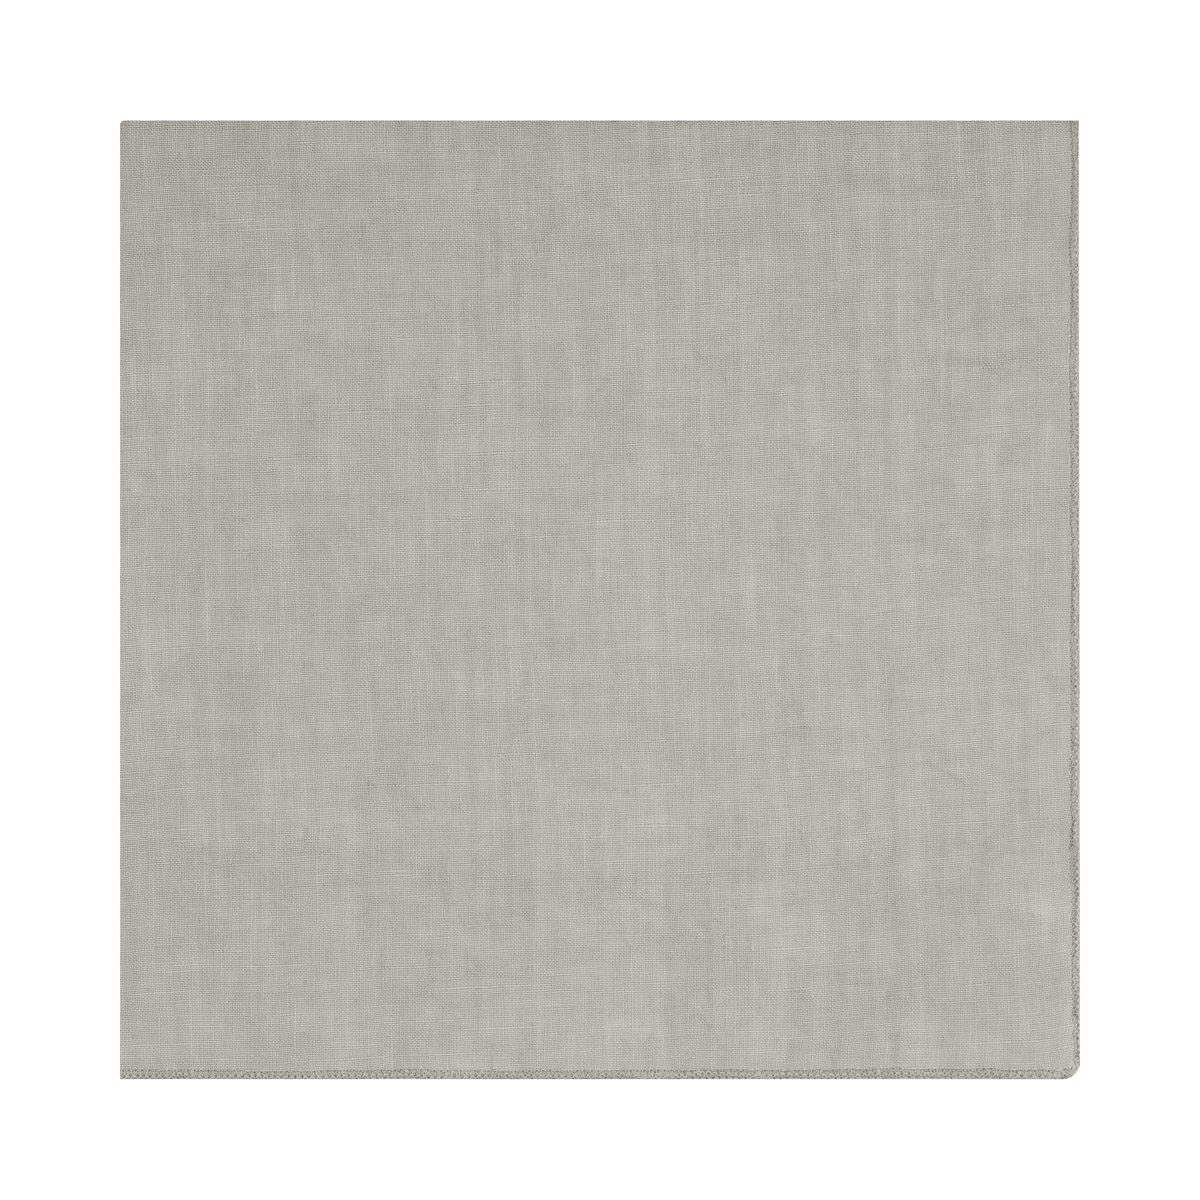 Leinen-Serviette -LINEO- Mirage Gray. Material: Linen. Von Blomus.